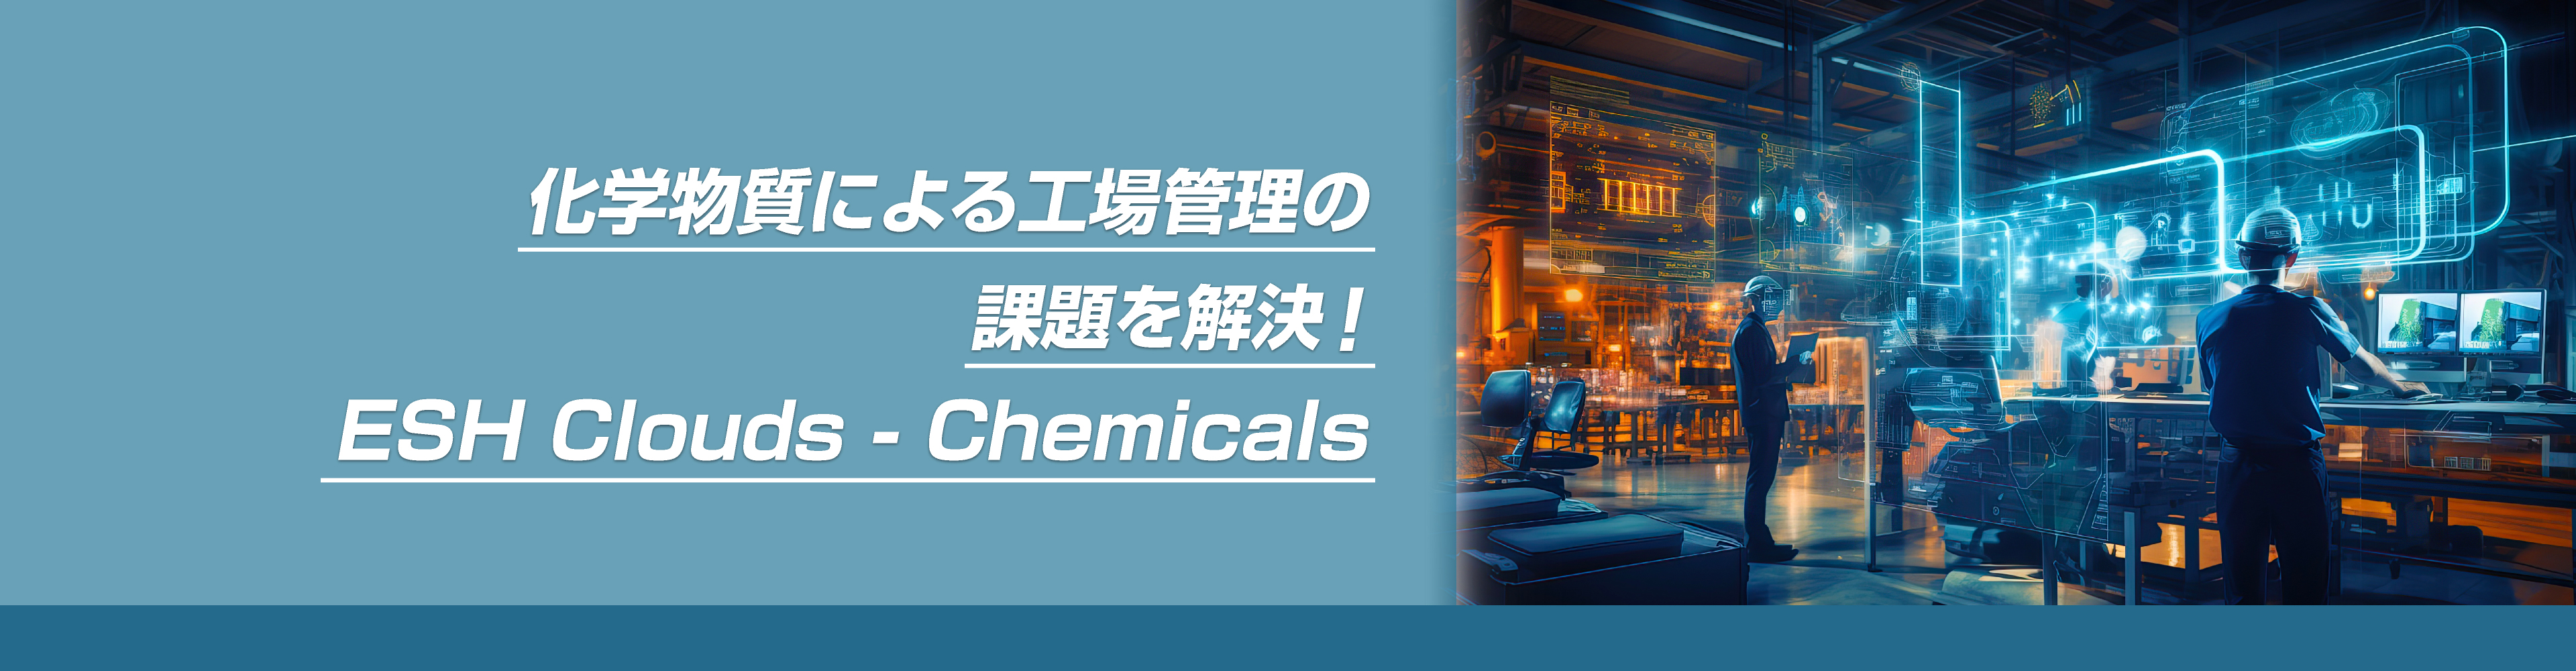 化学物質による工場管理の課題を解決ESH Clouds-Chemicals